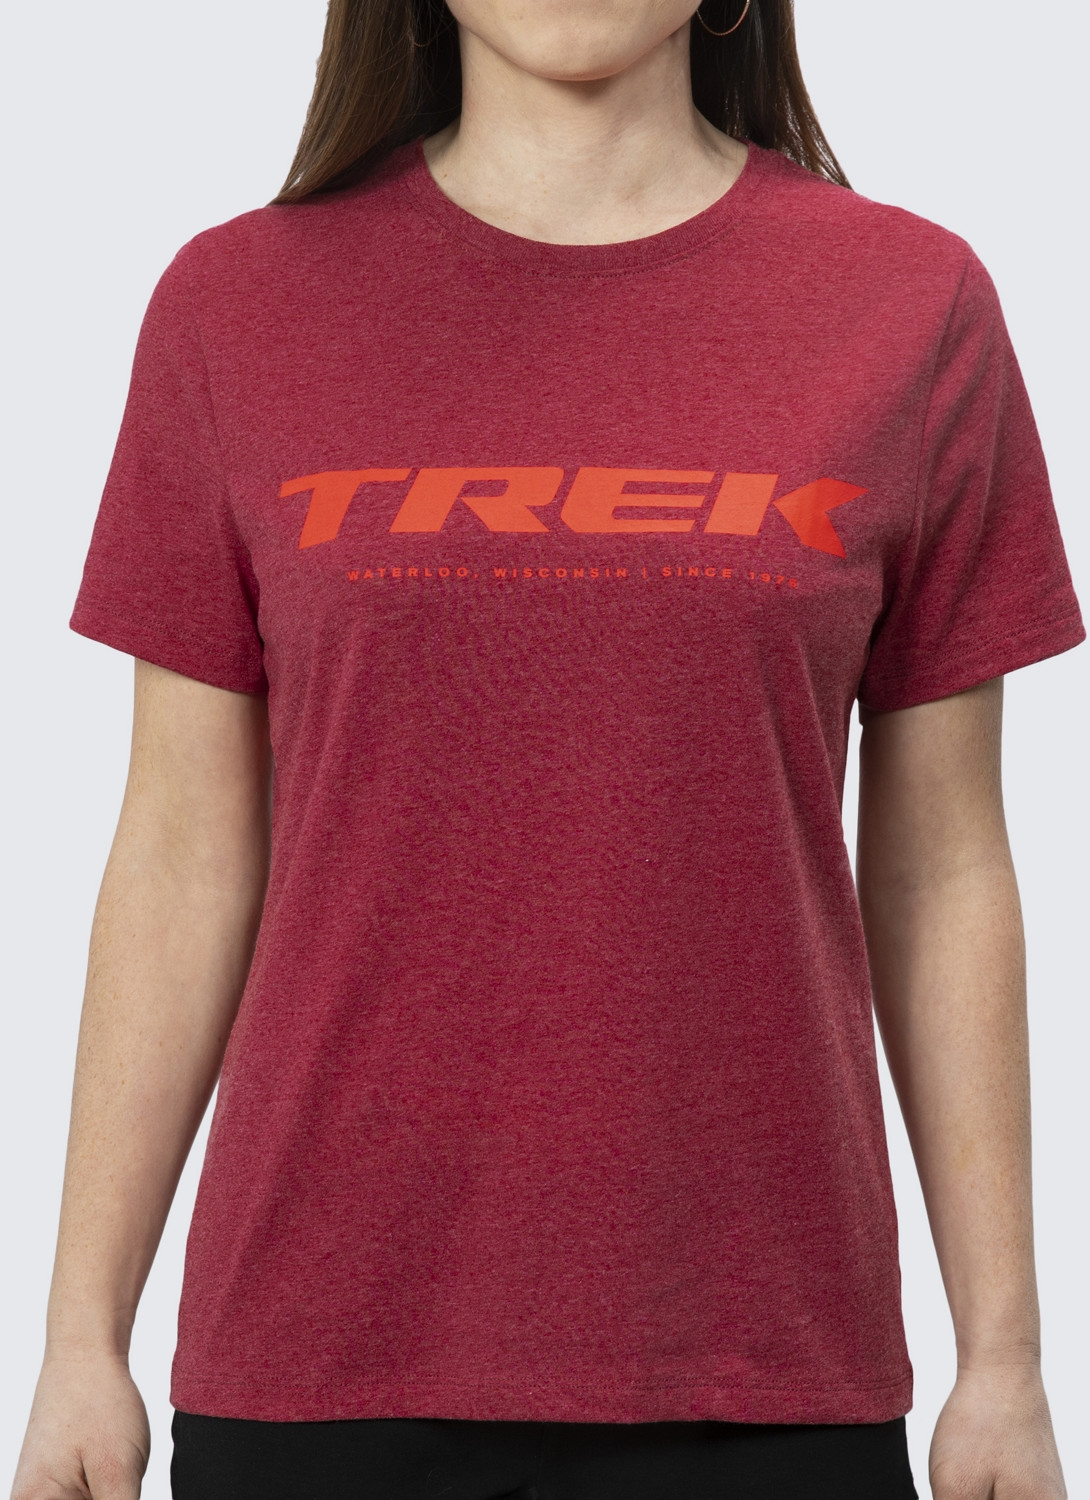 trek women's shirt